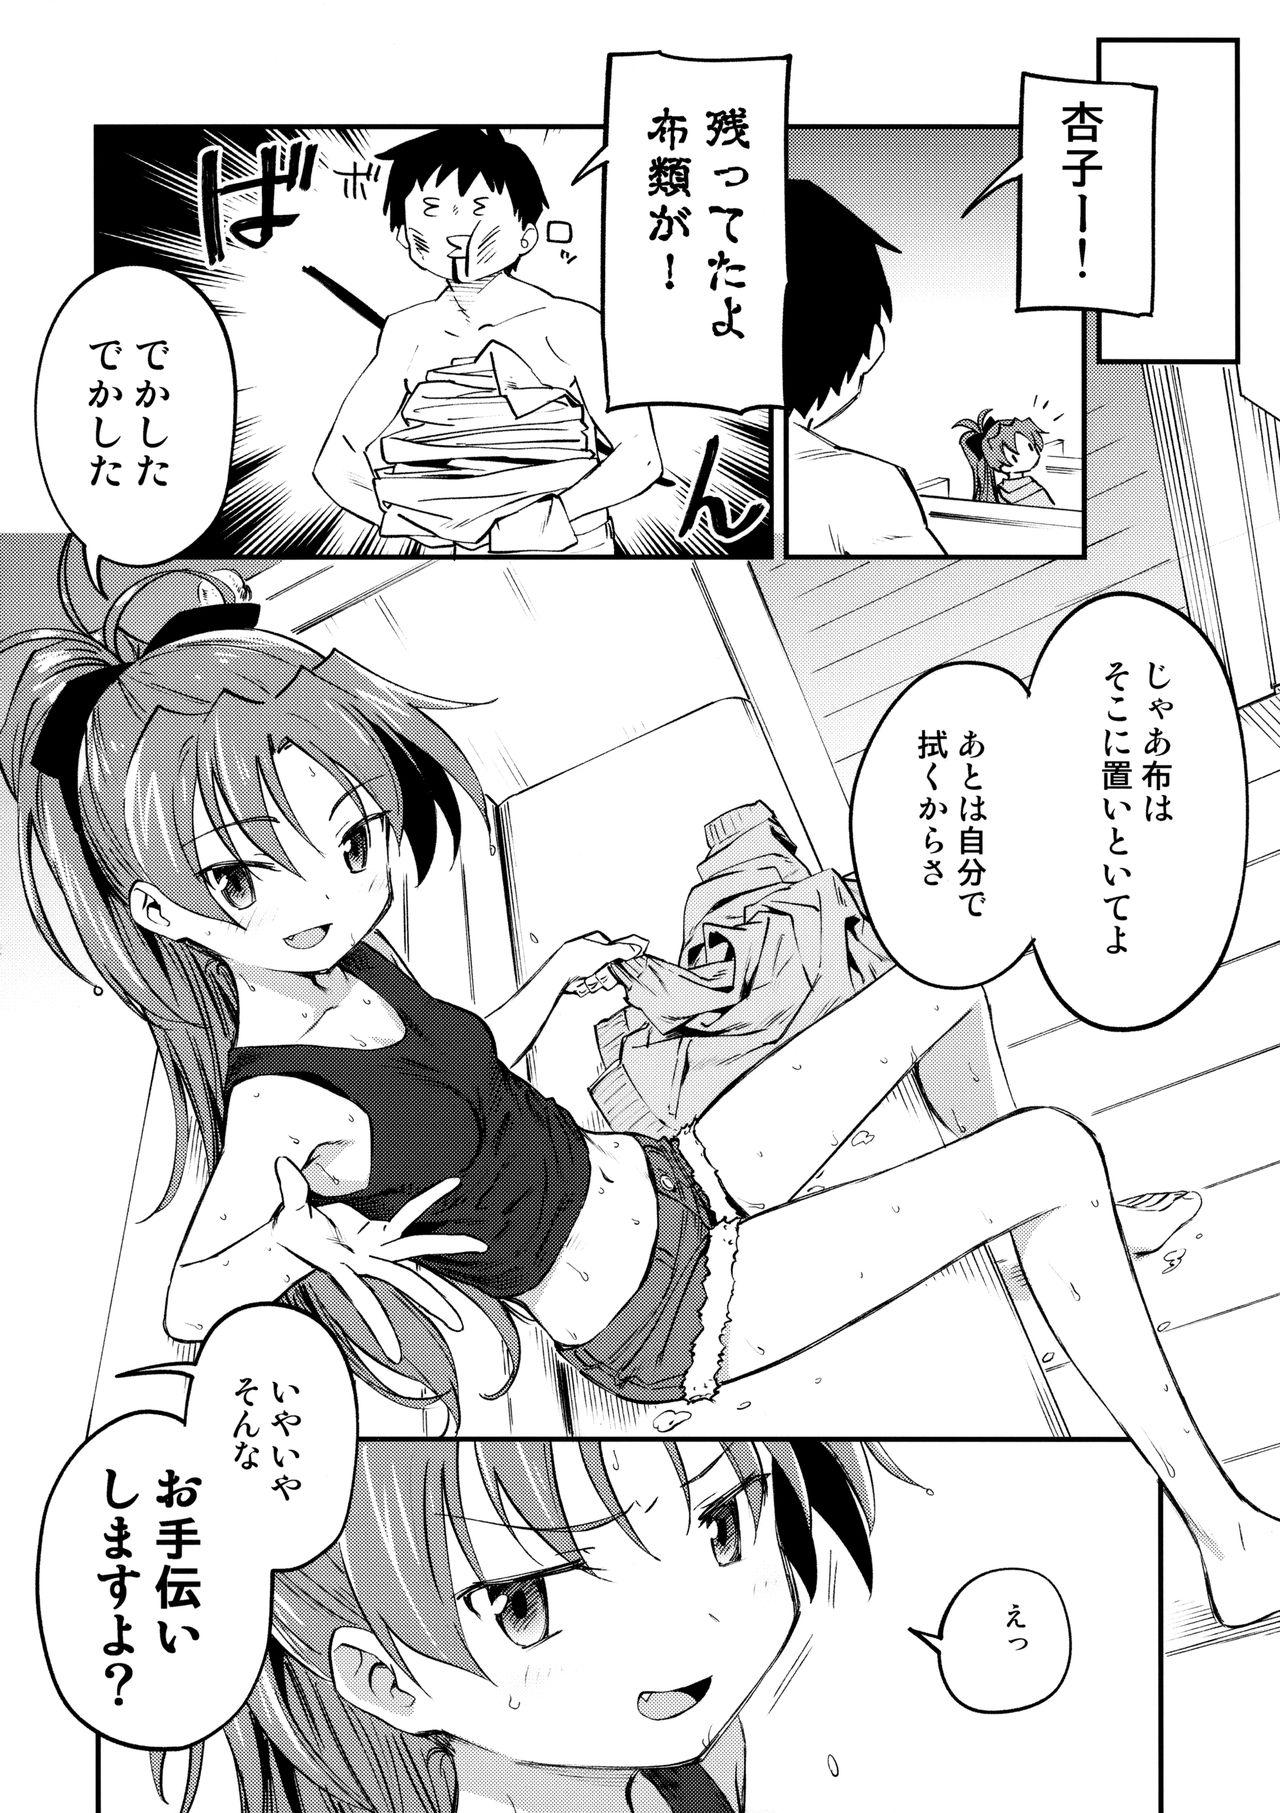 Perfect Butt Kyouko to Are Suru Hon 3 - Puella magi madoka magica Passion - Page 5